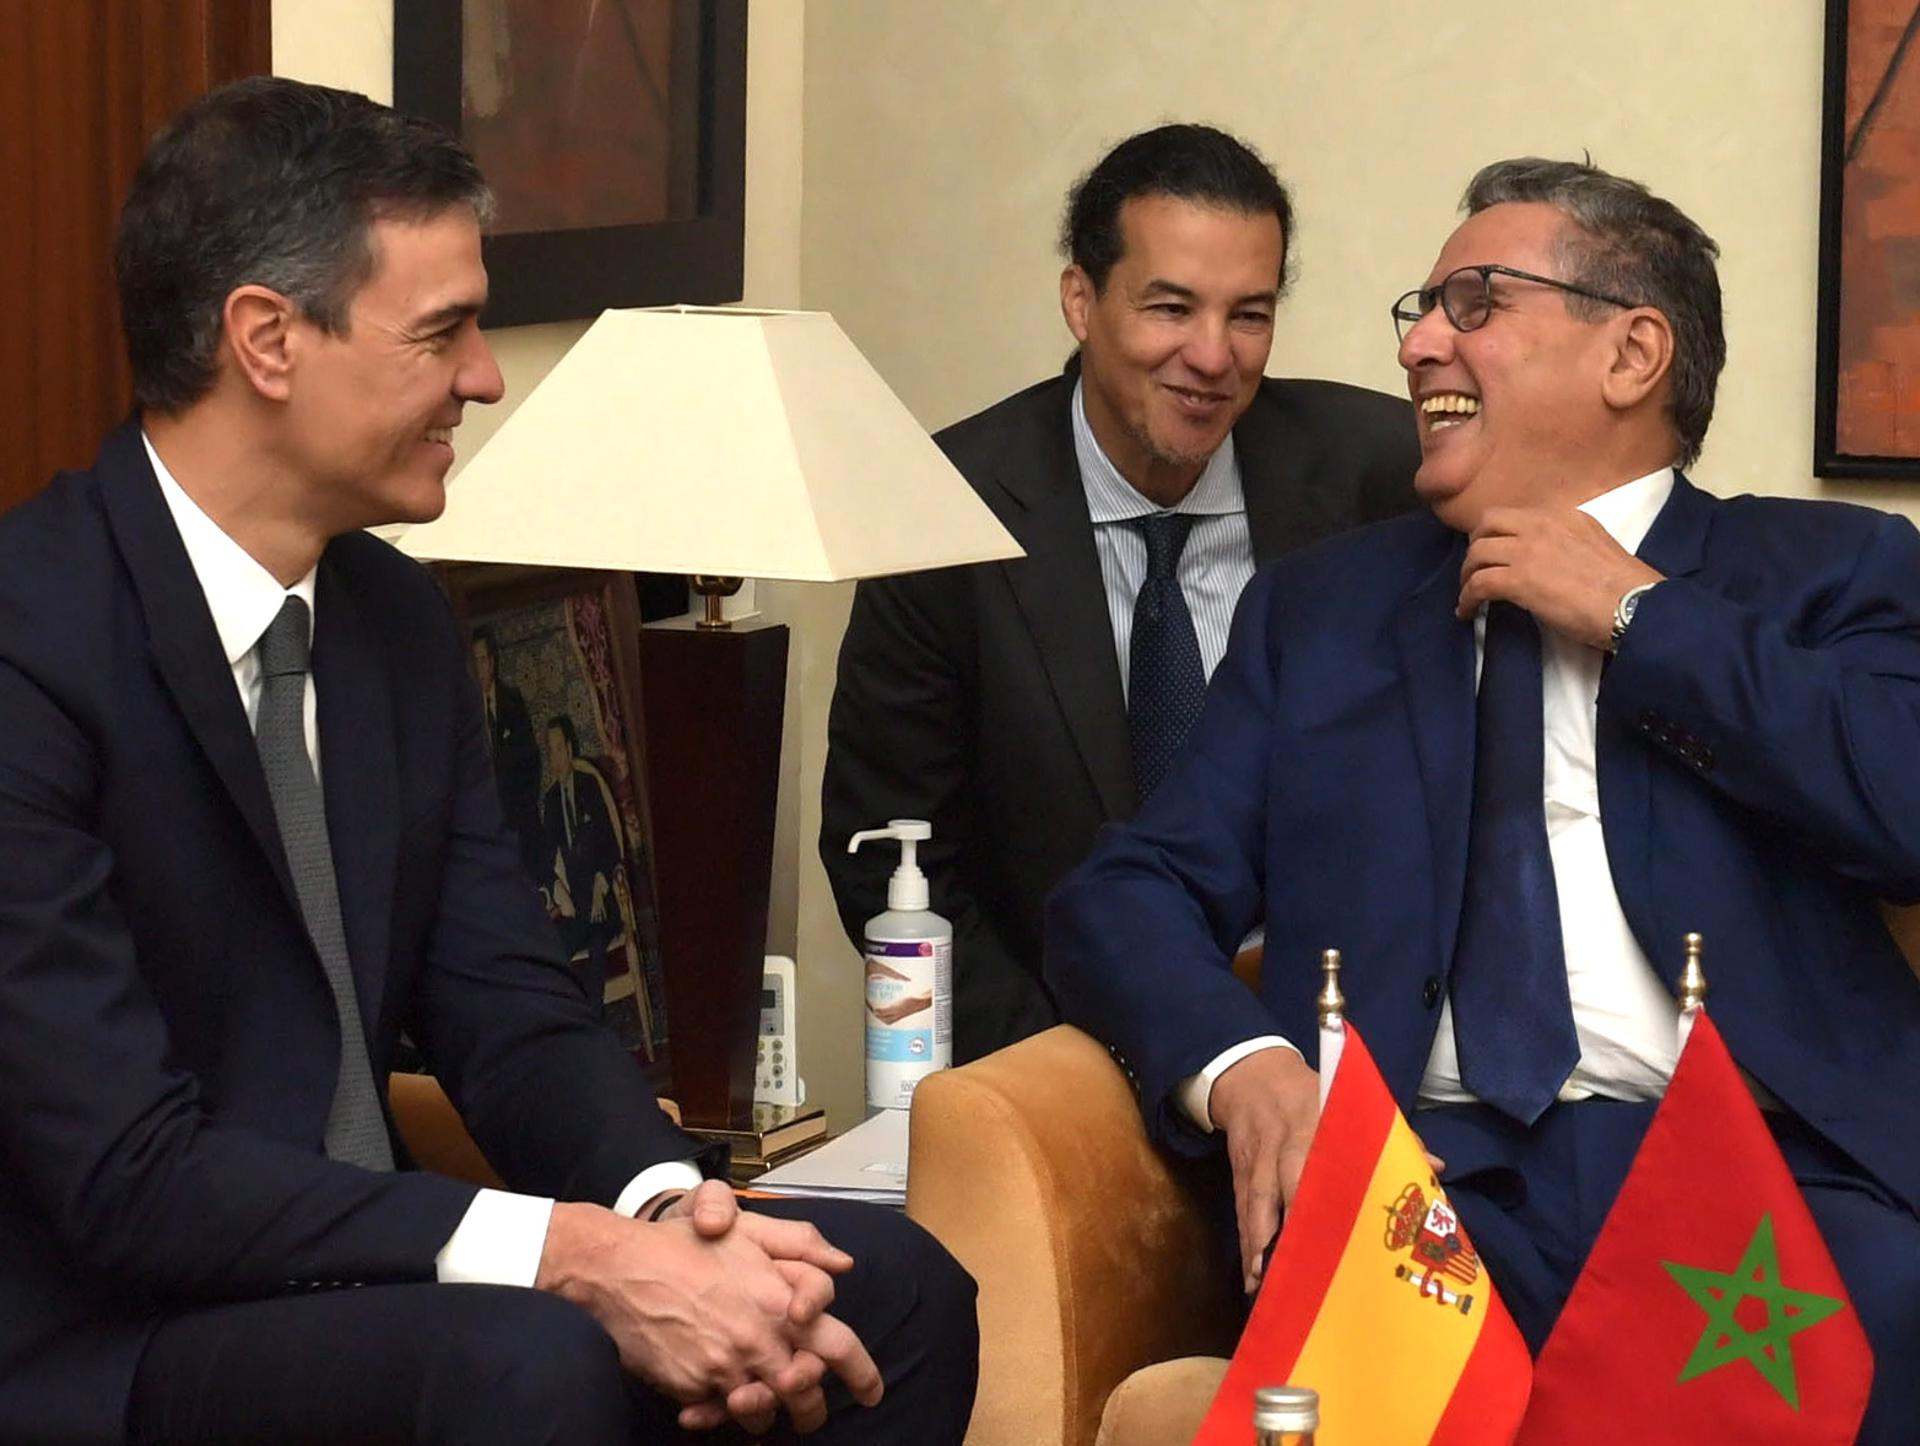 ¿Crees que Marruecos ya le ha cogido el truco a Pedro Sánchez?